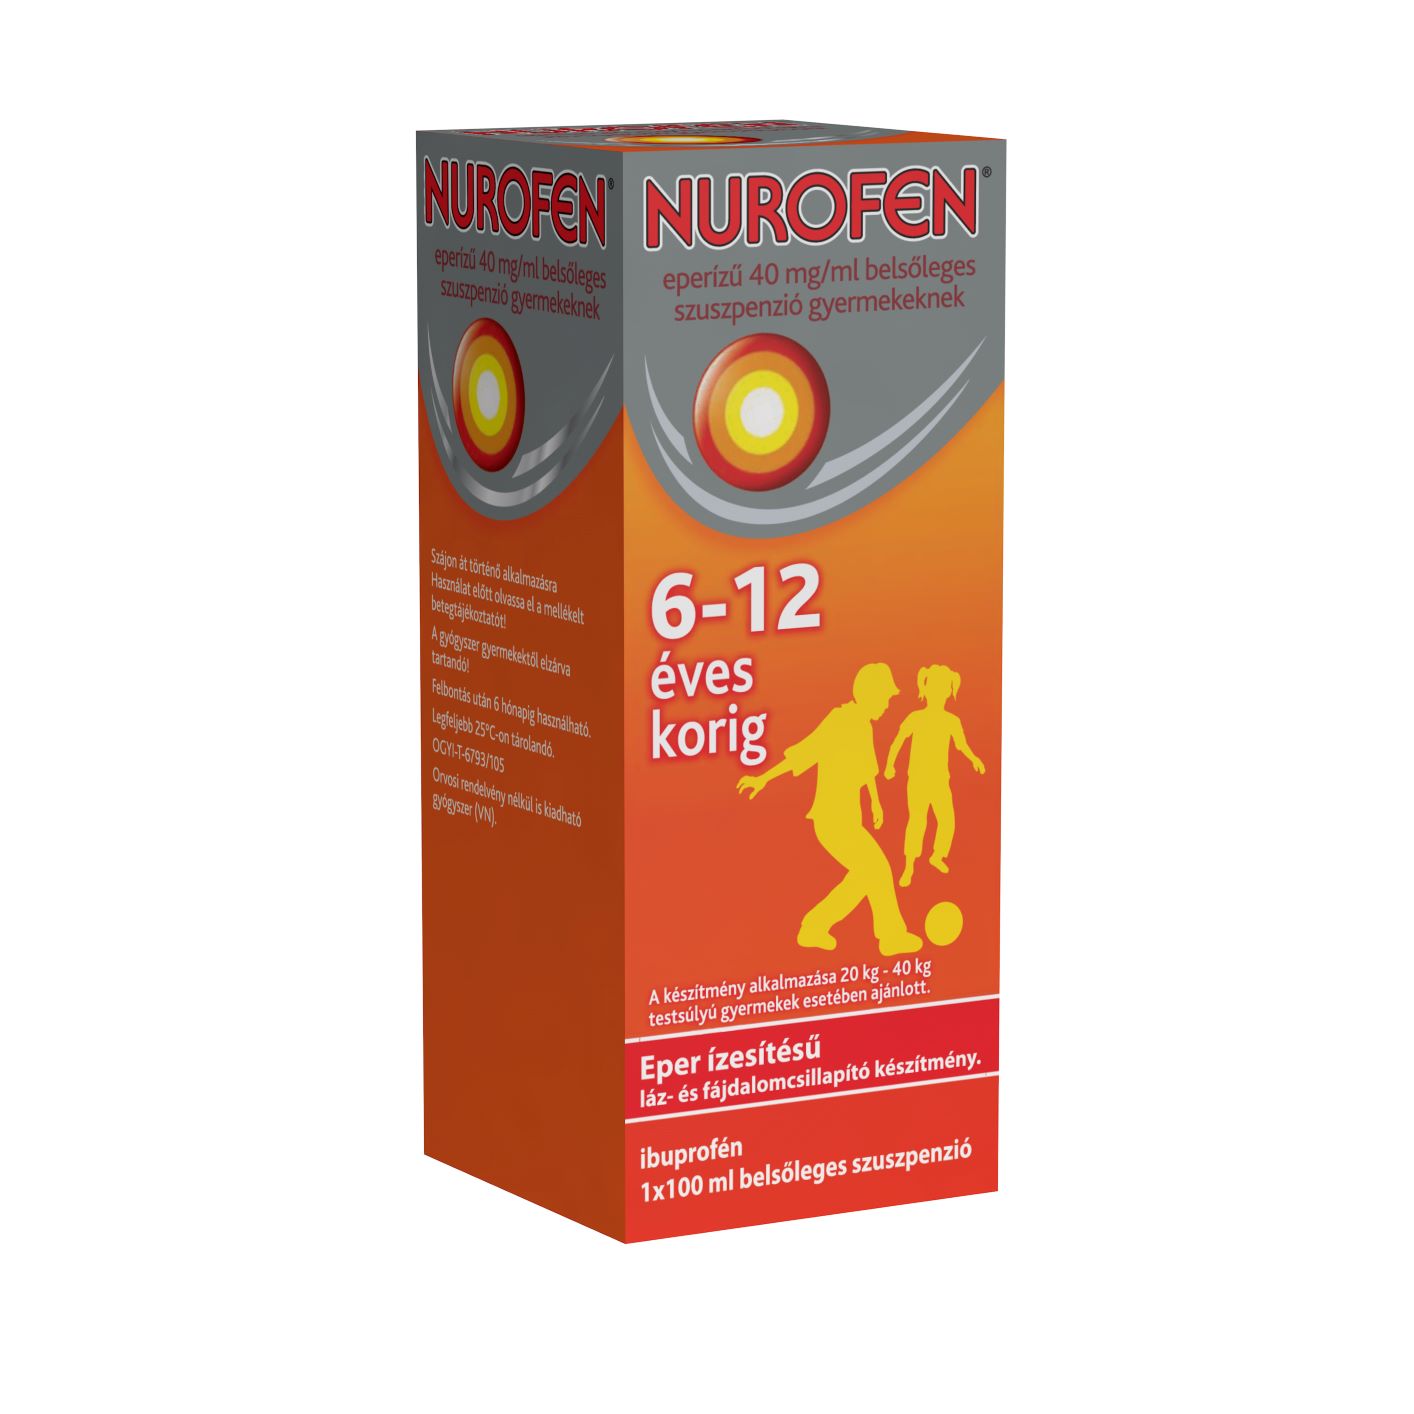 Nurofen eperízű 40 mg/ml belsőleges szuszpenzió gyermekeknek